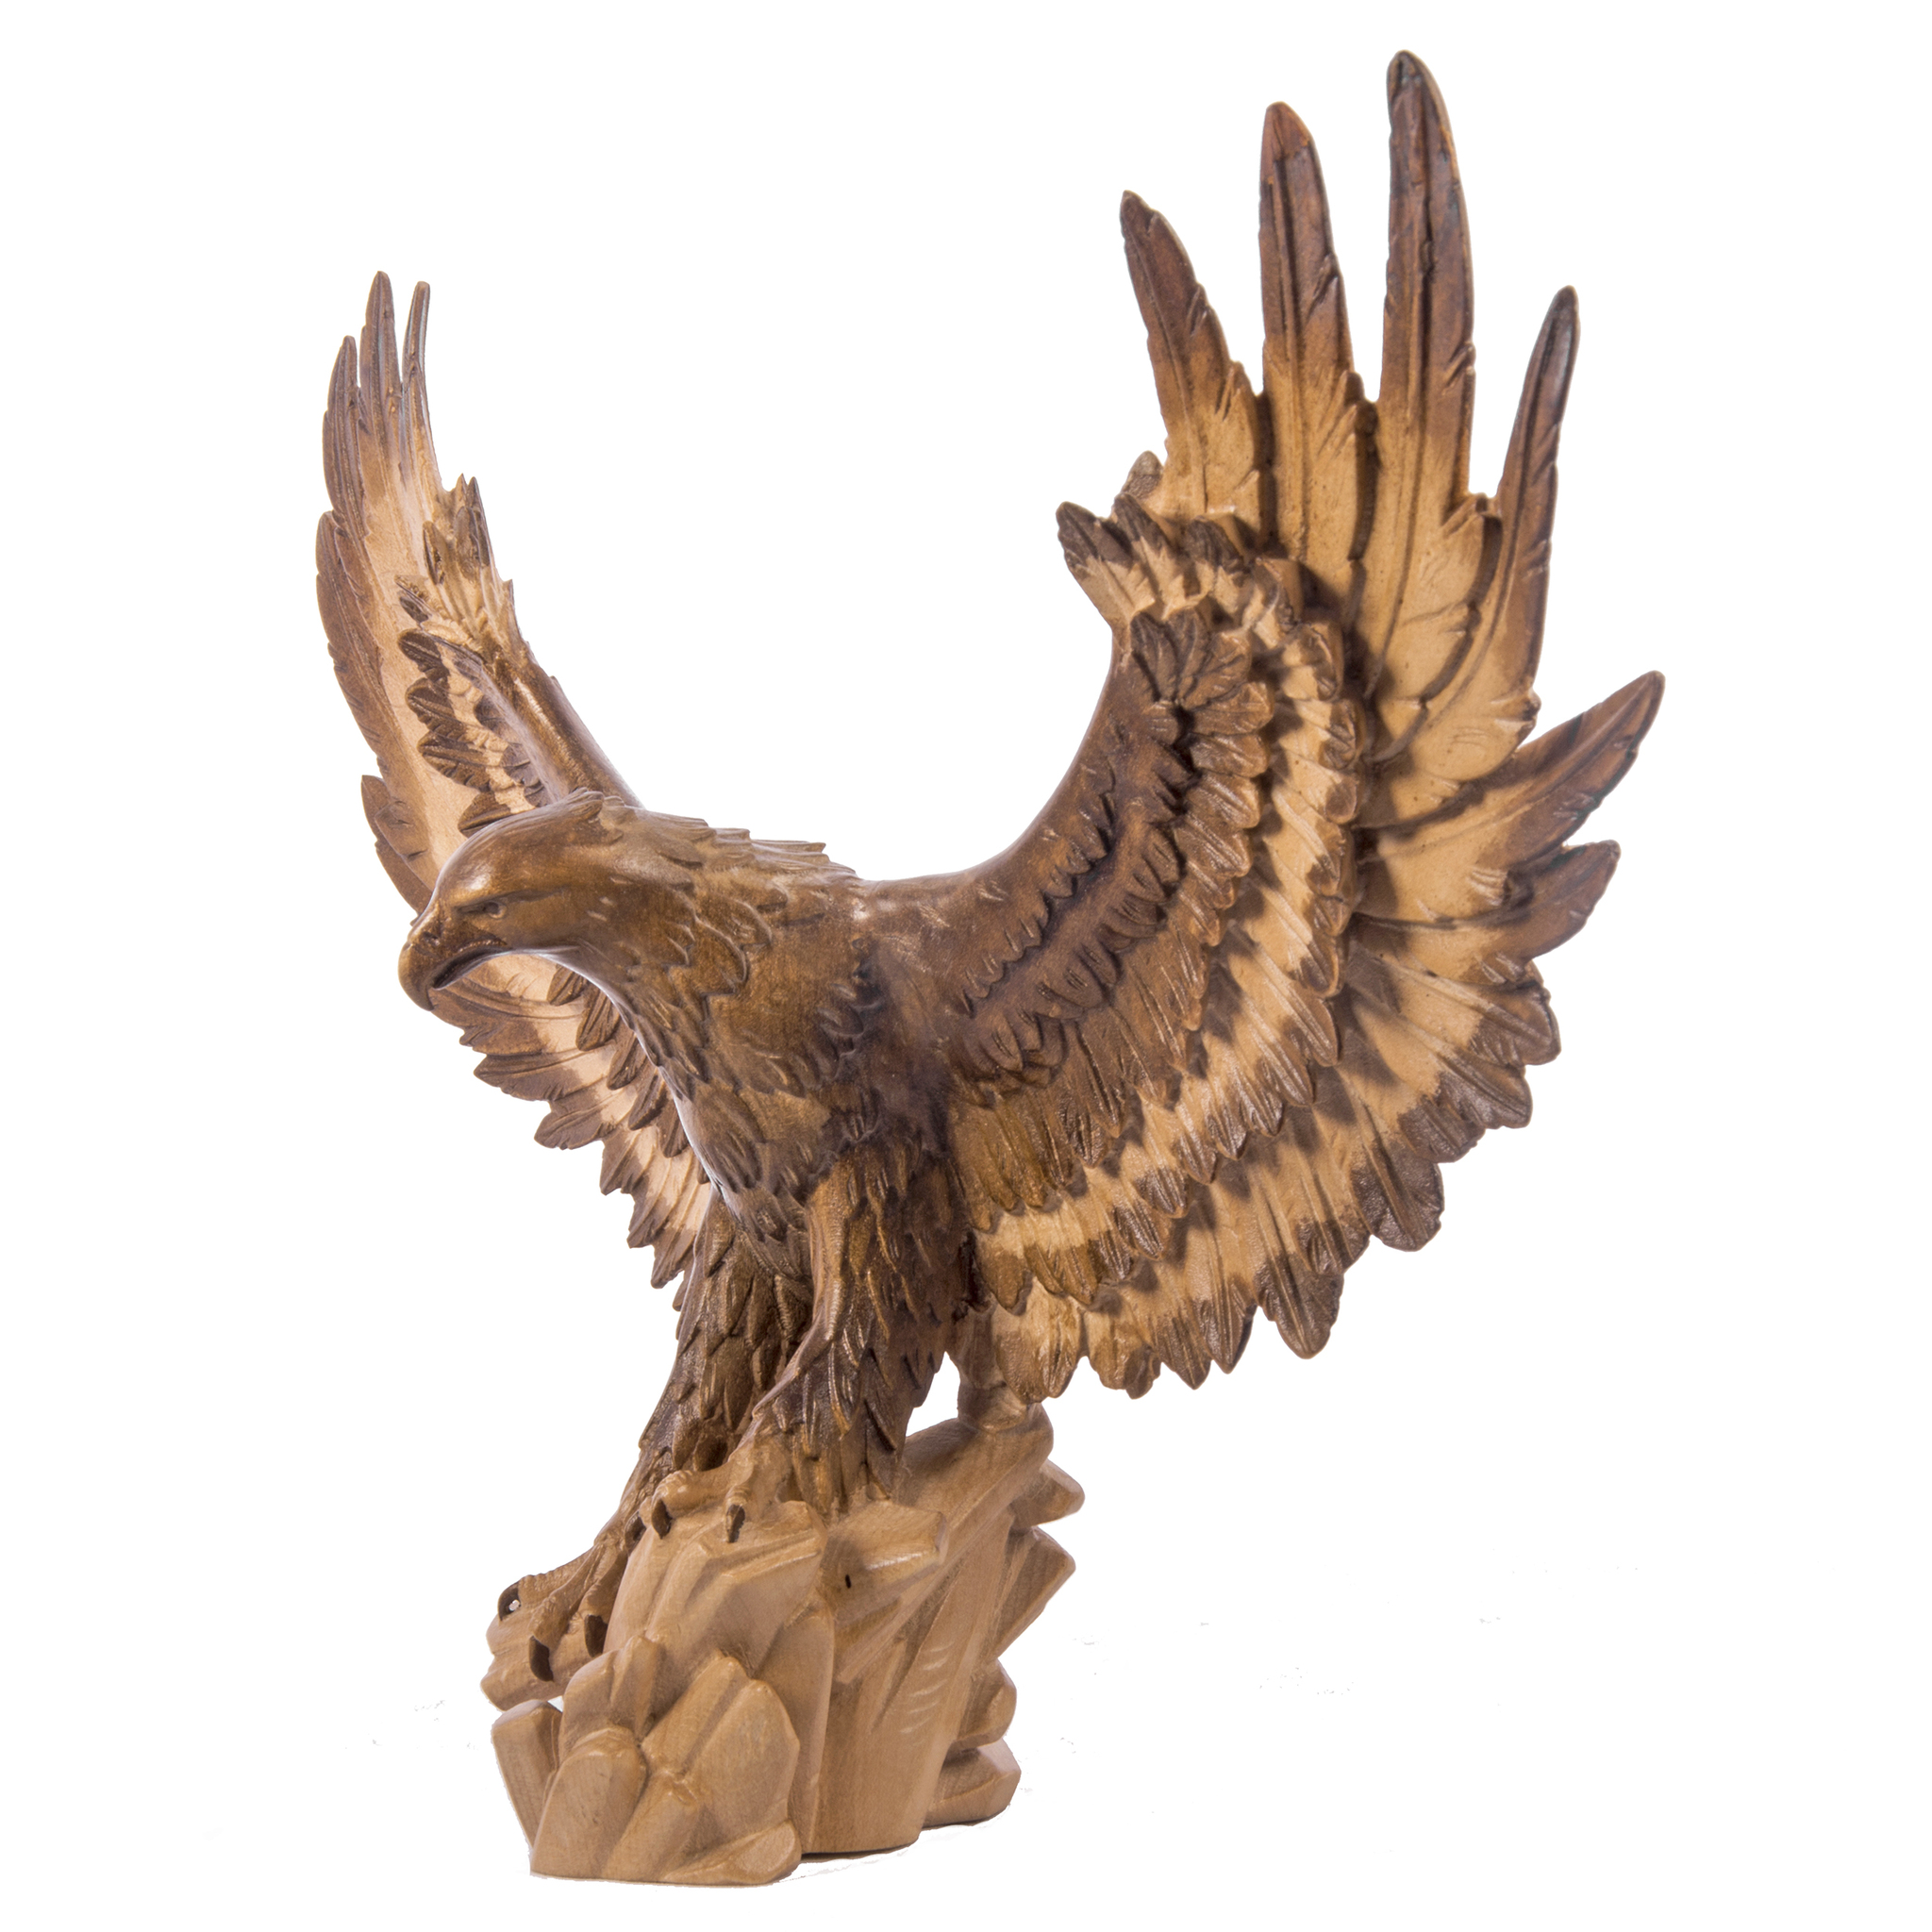 Статуэтка орла – символичный презент